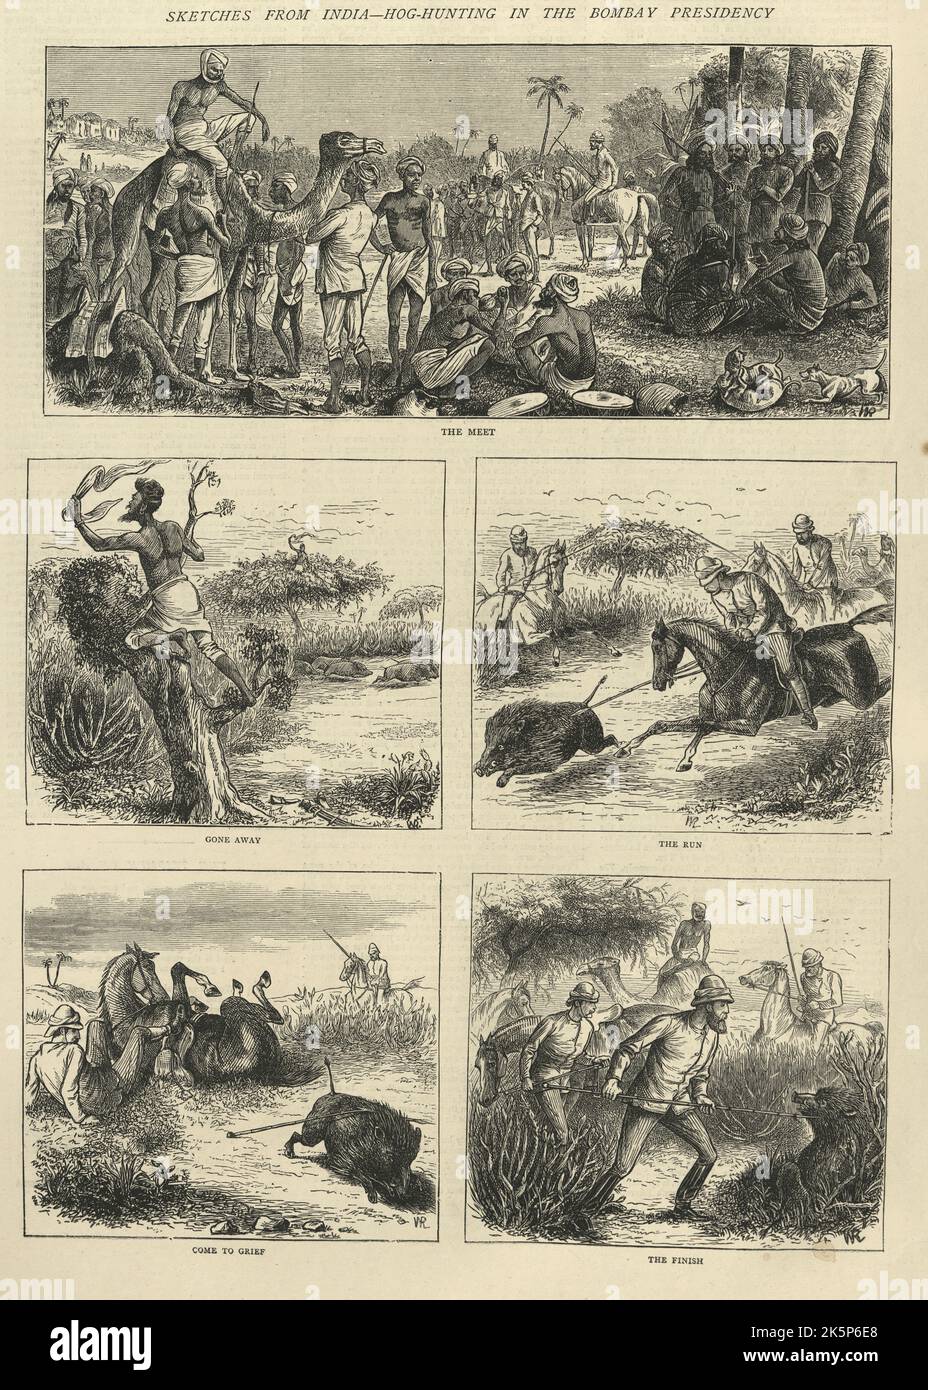 Esquisse une chasse sauvage de sanglier dans la présidence de Bombay, victorienne 19th siècle Banque D'Images